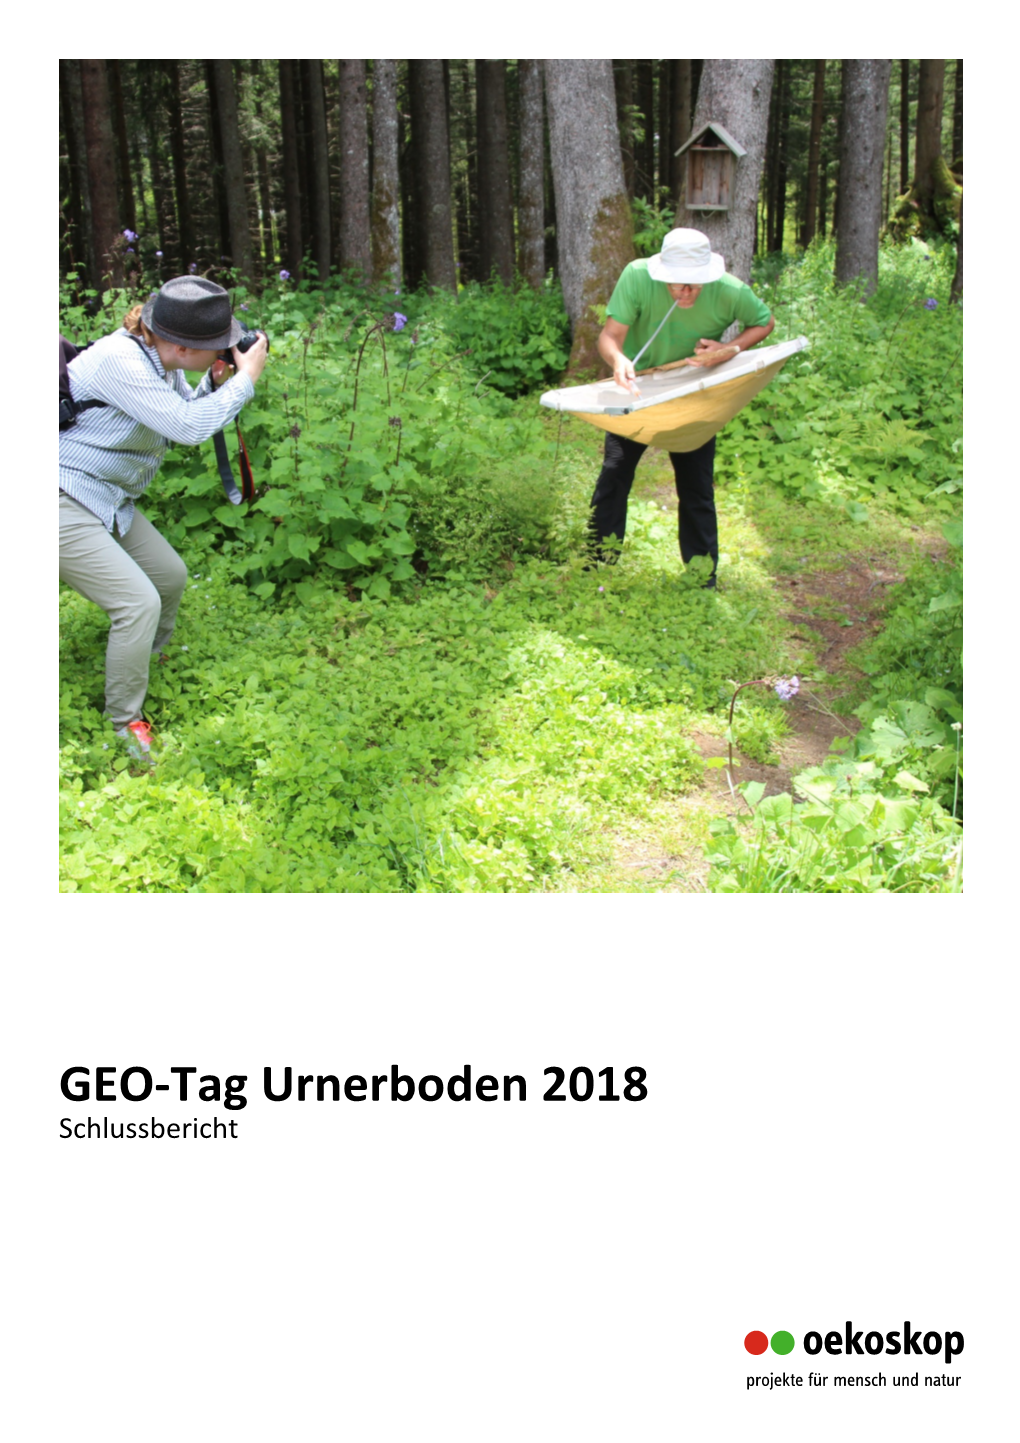 GEO-Tag Urnerboden 2018 Schlussbericht